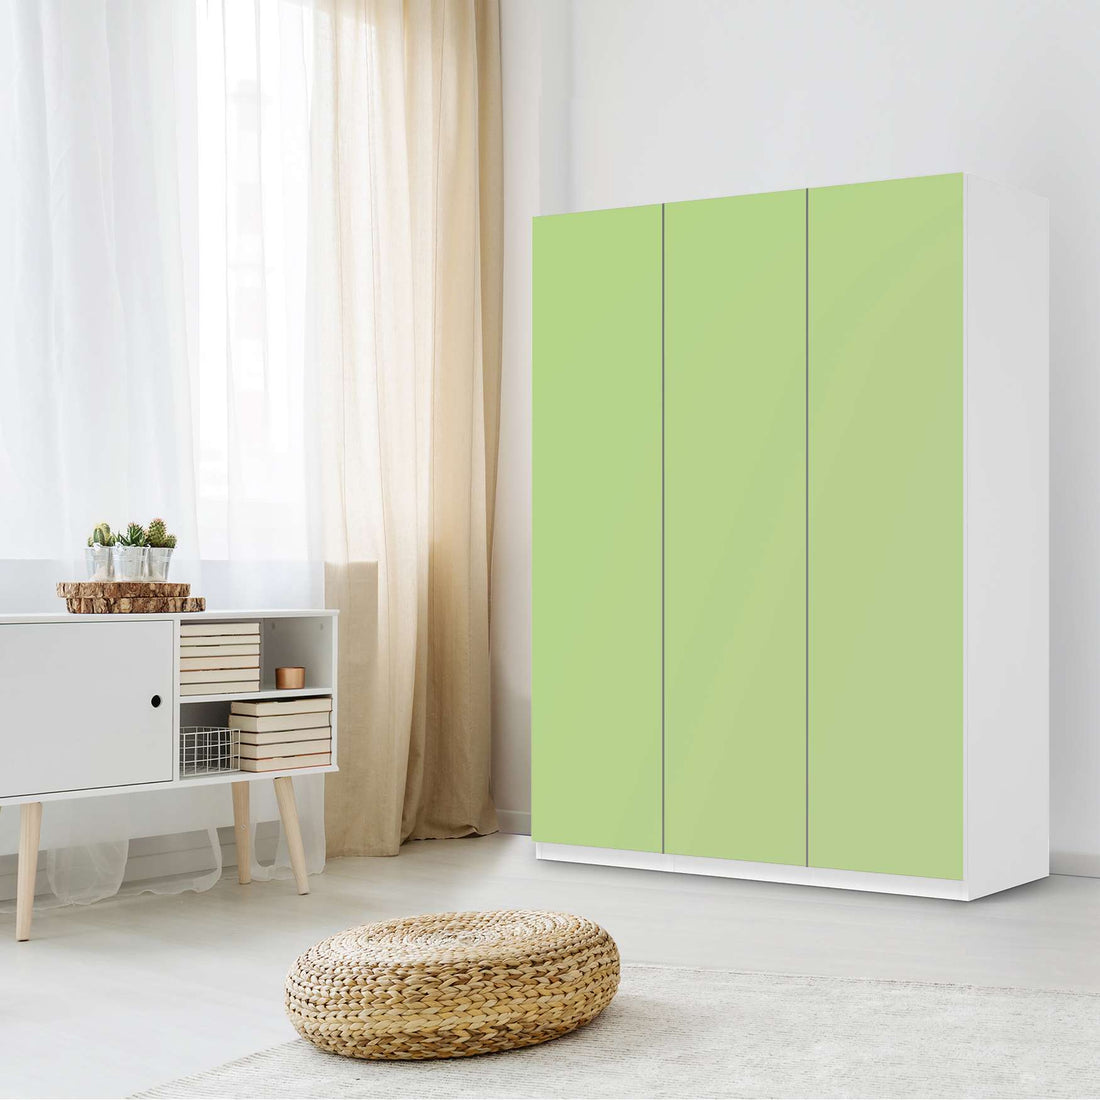 Folie für Möbel Hellgrün Light - IKEA Pax Schrank 201 cm Höhe - 3 Türen - Schlafzimmer